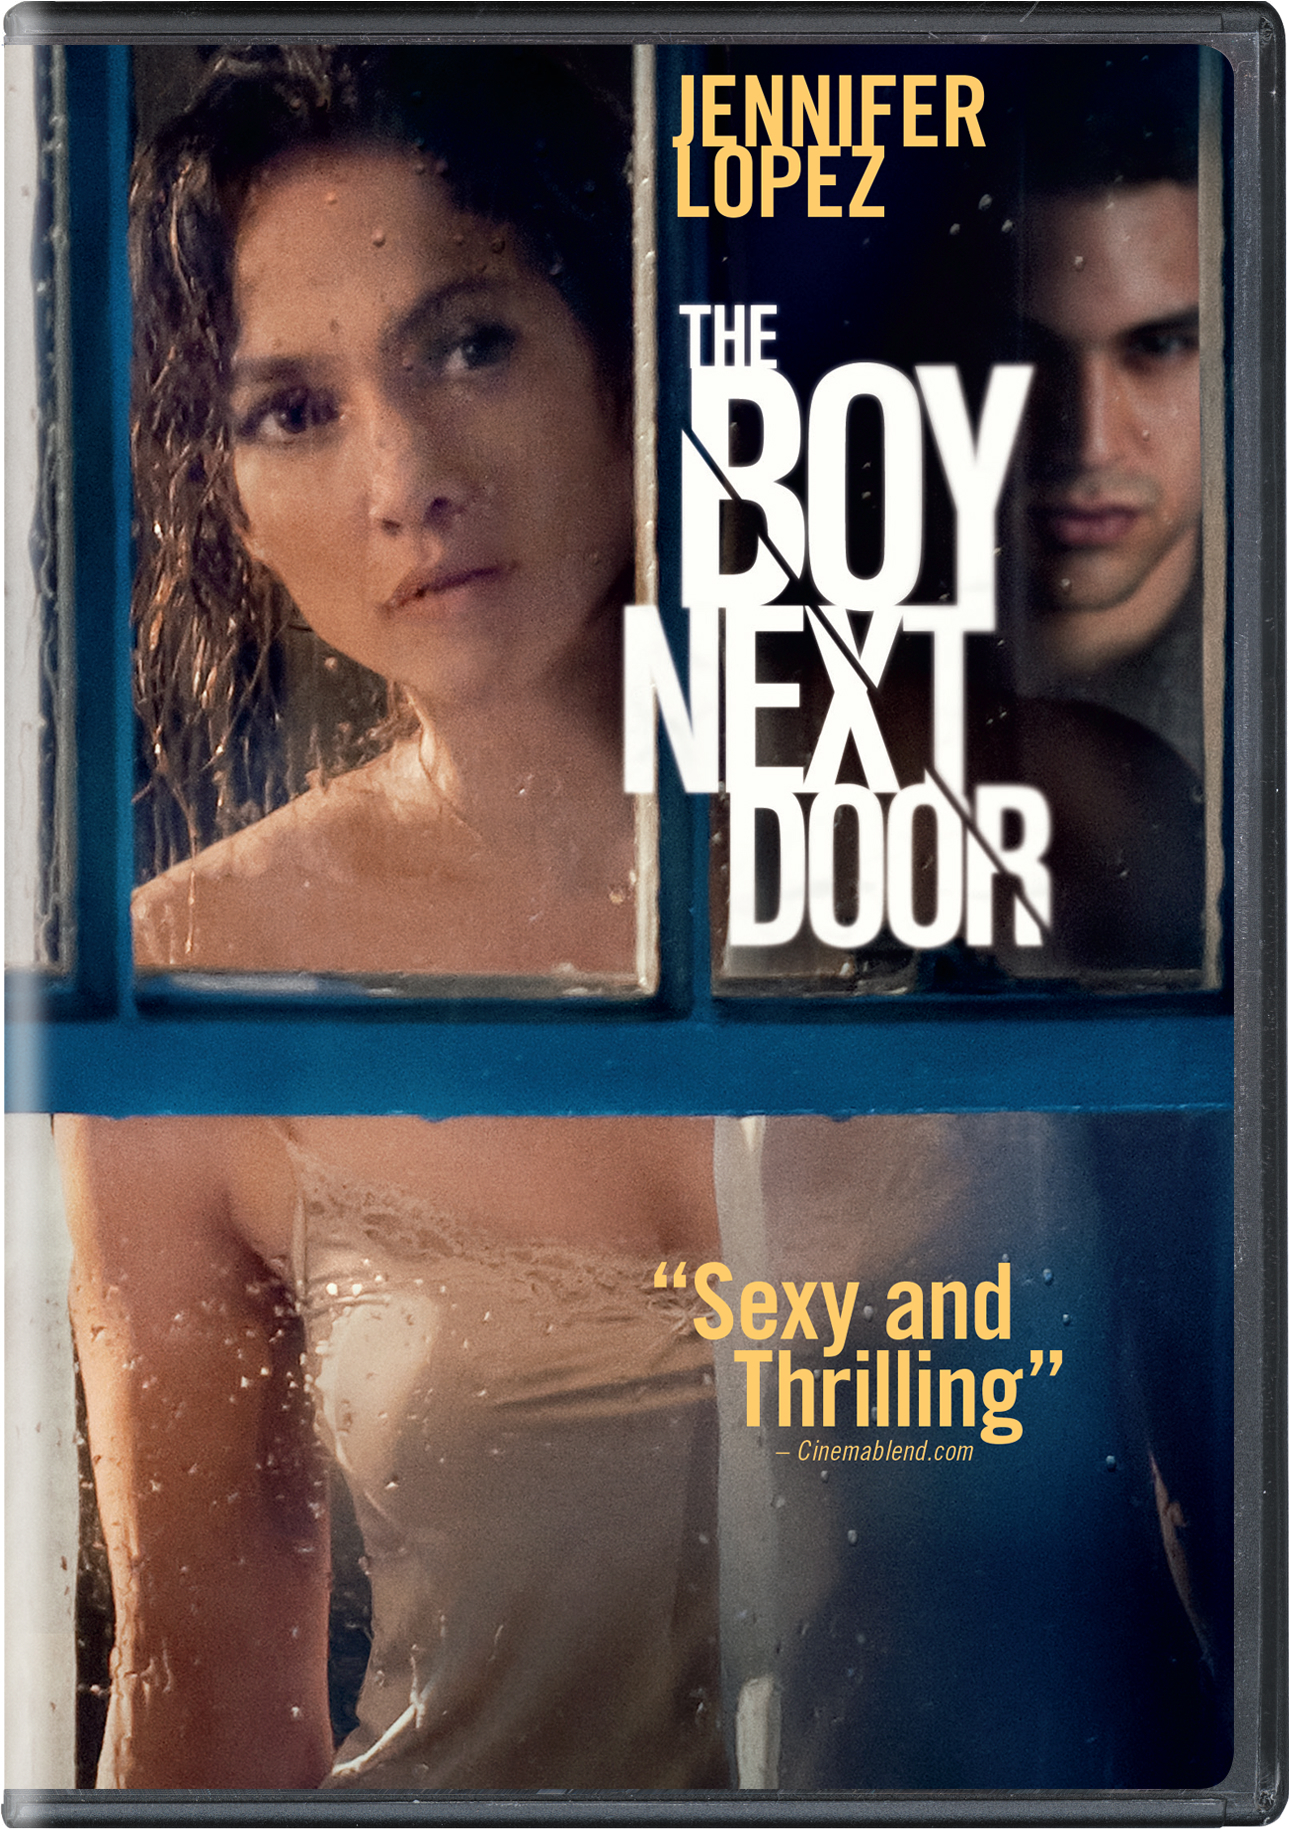 The Boy Next Door - DVD [ 2015 ]  - Thriller Movies On DVD - Movies On GRUV